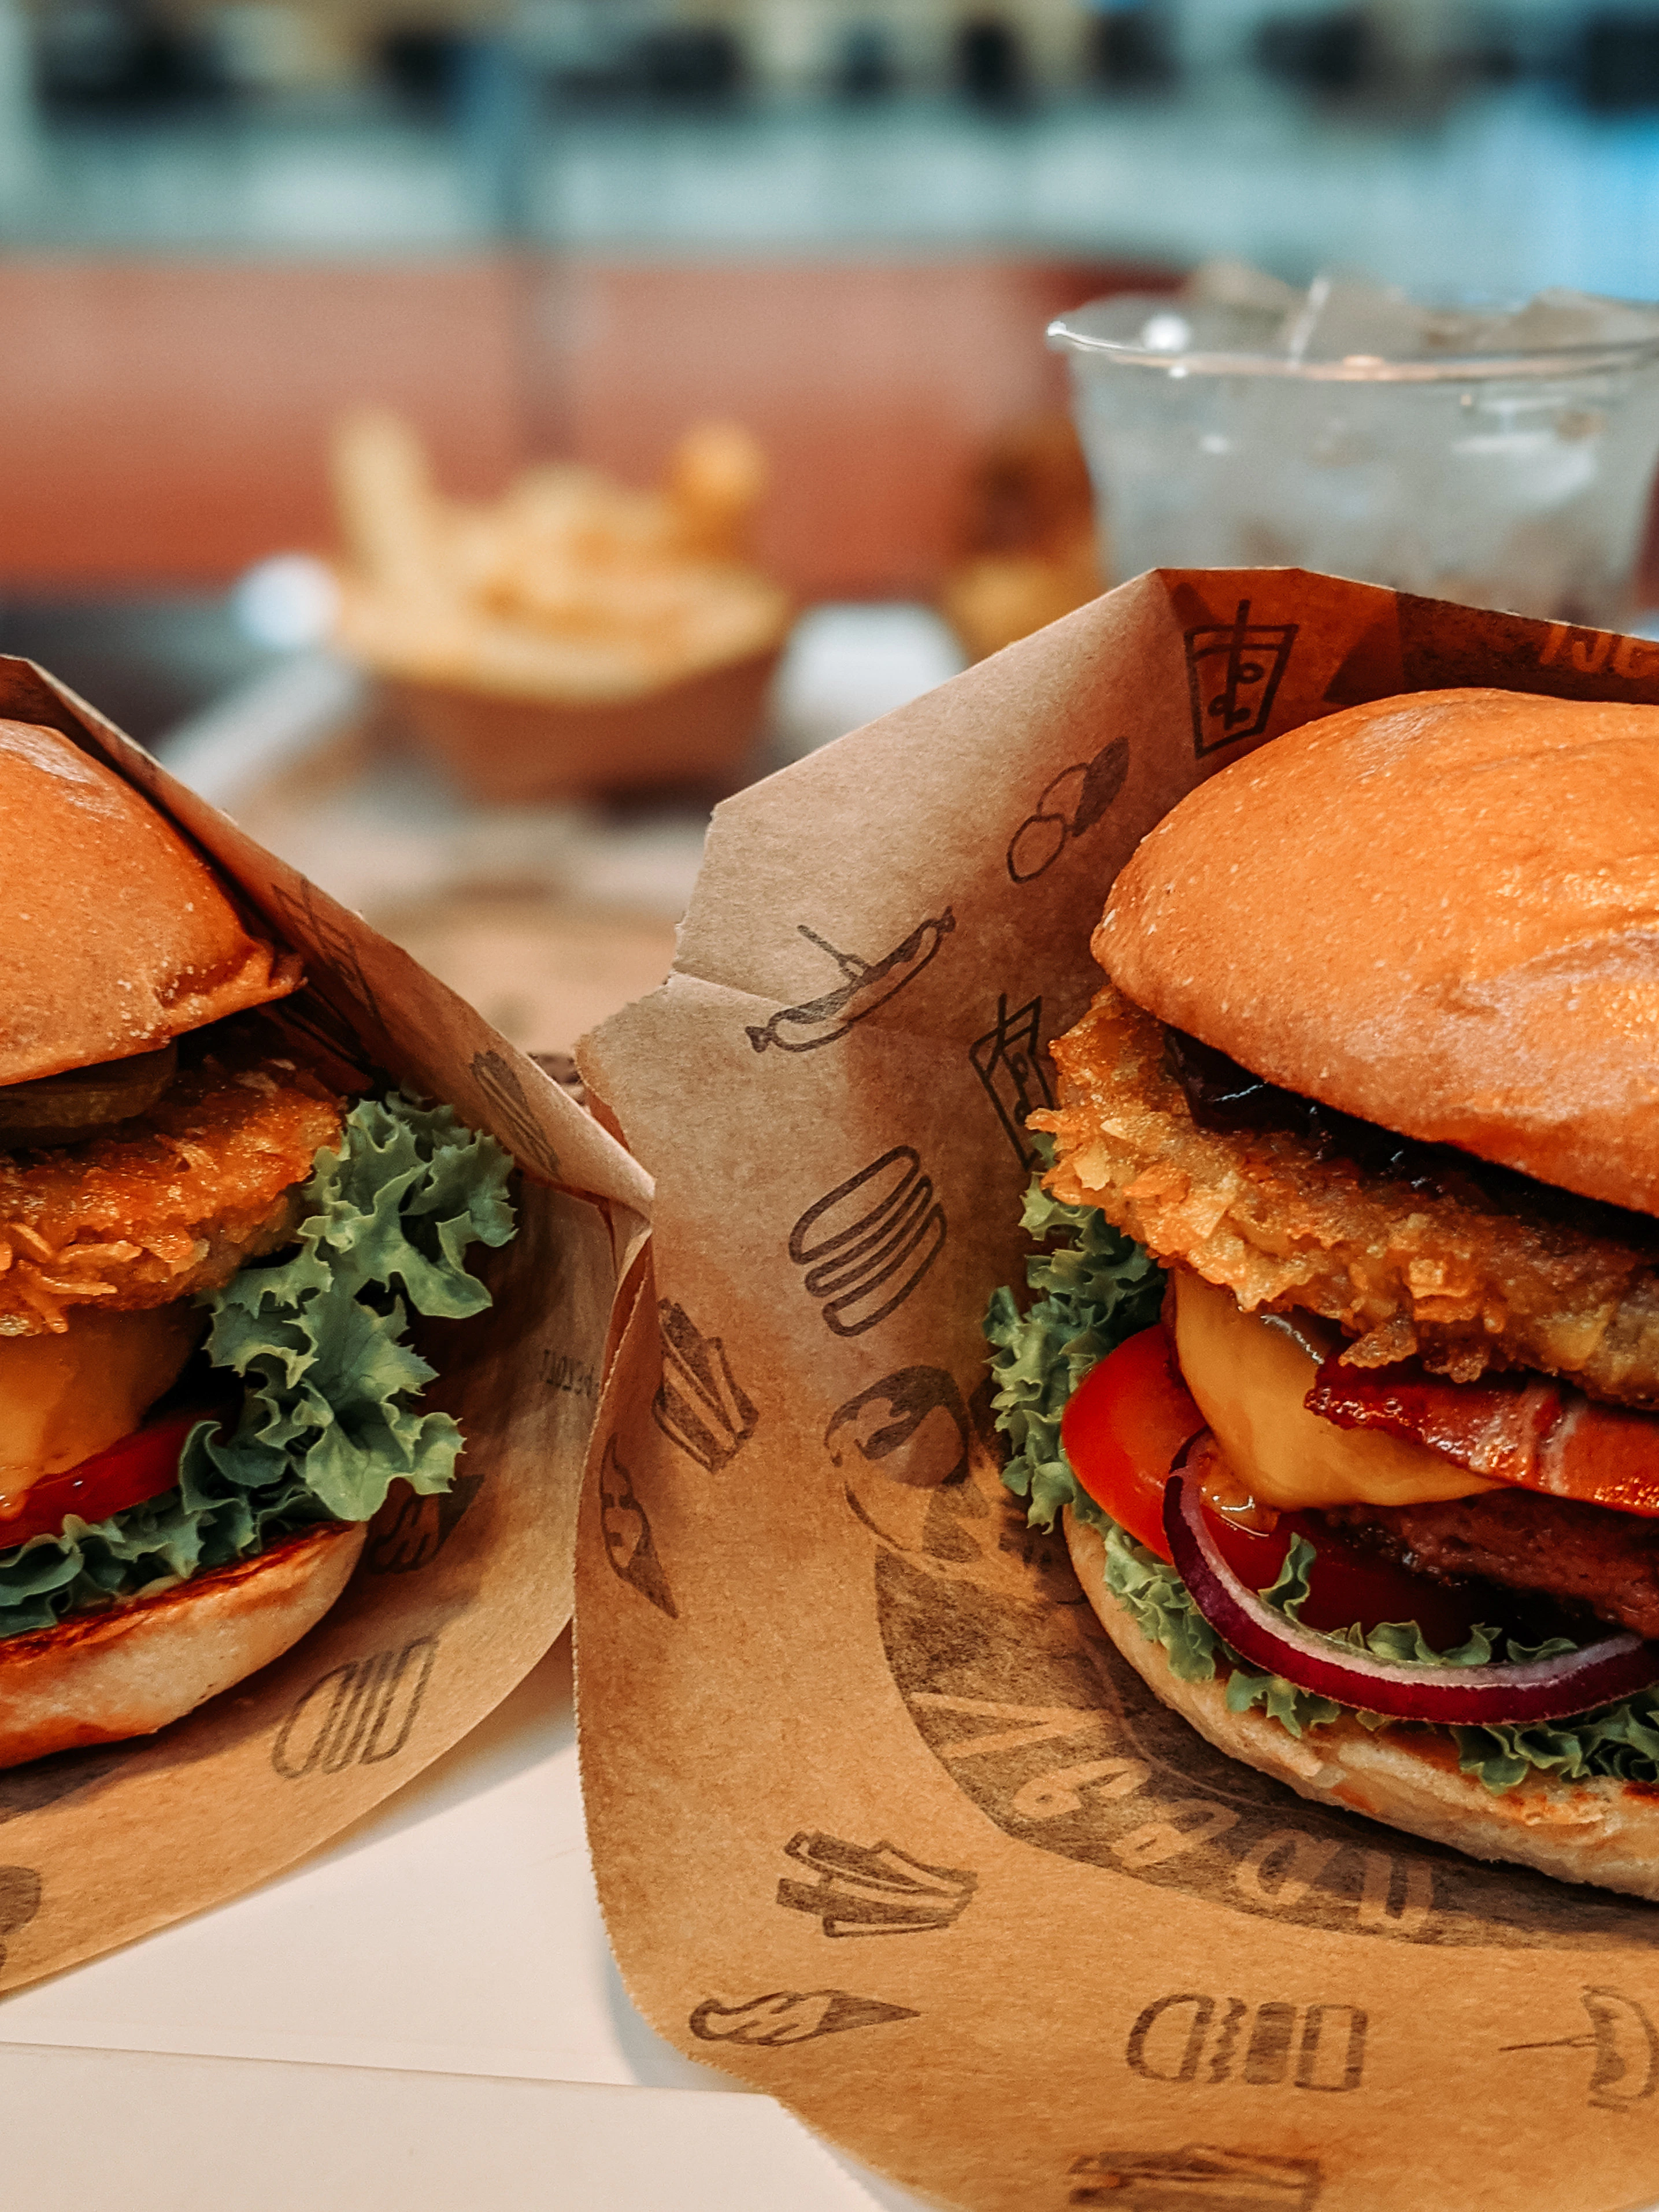 Image décorative représentant deux burgers dans des emballages en papiers, prêts à être dégustés.